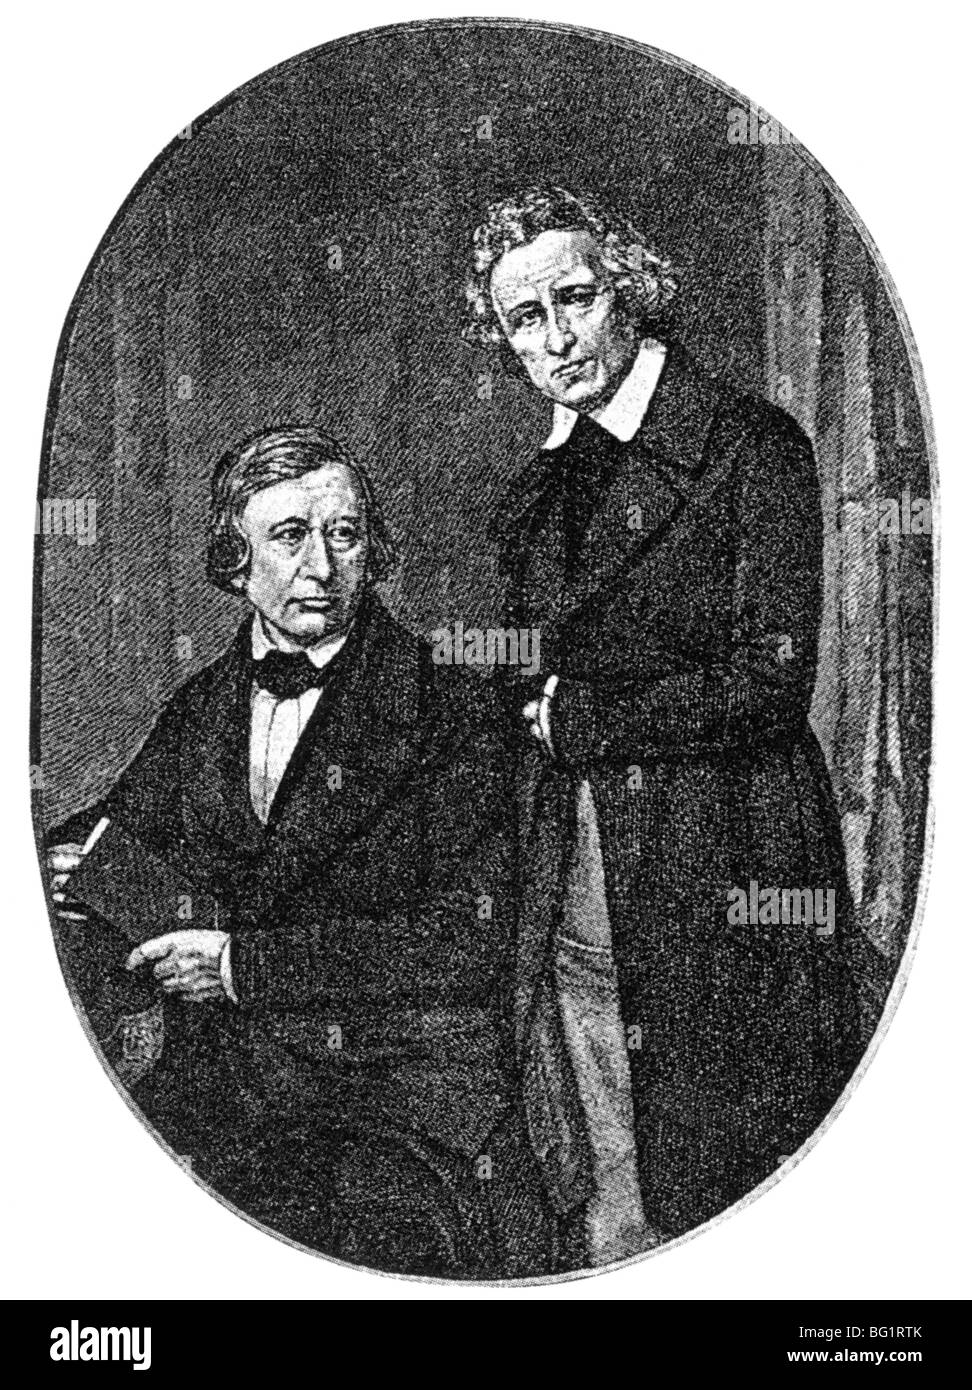 Fratelli Grimm degli studiosi tedeschi che hanno raccolto le storie popolari e studiato la lingua tedesca. Wilhelm Grimm a sinistra e Giacobbe Foto Stock